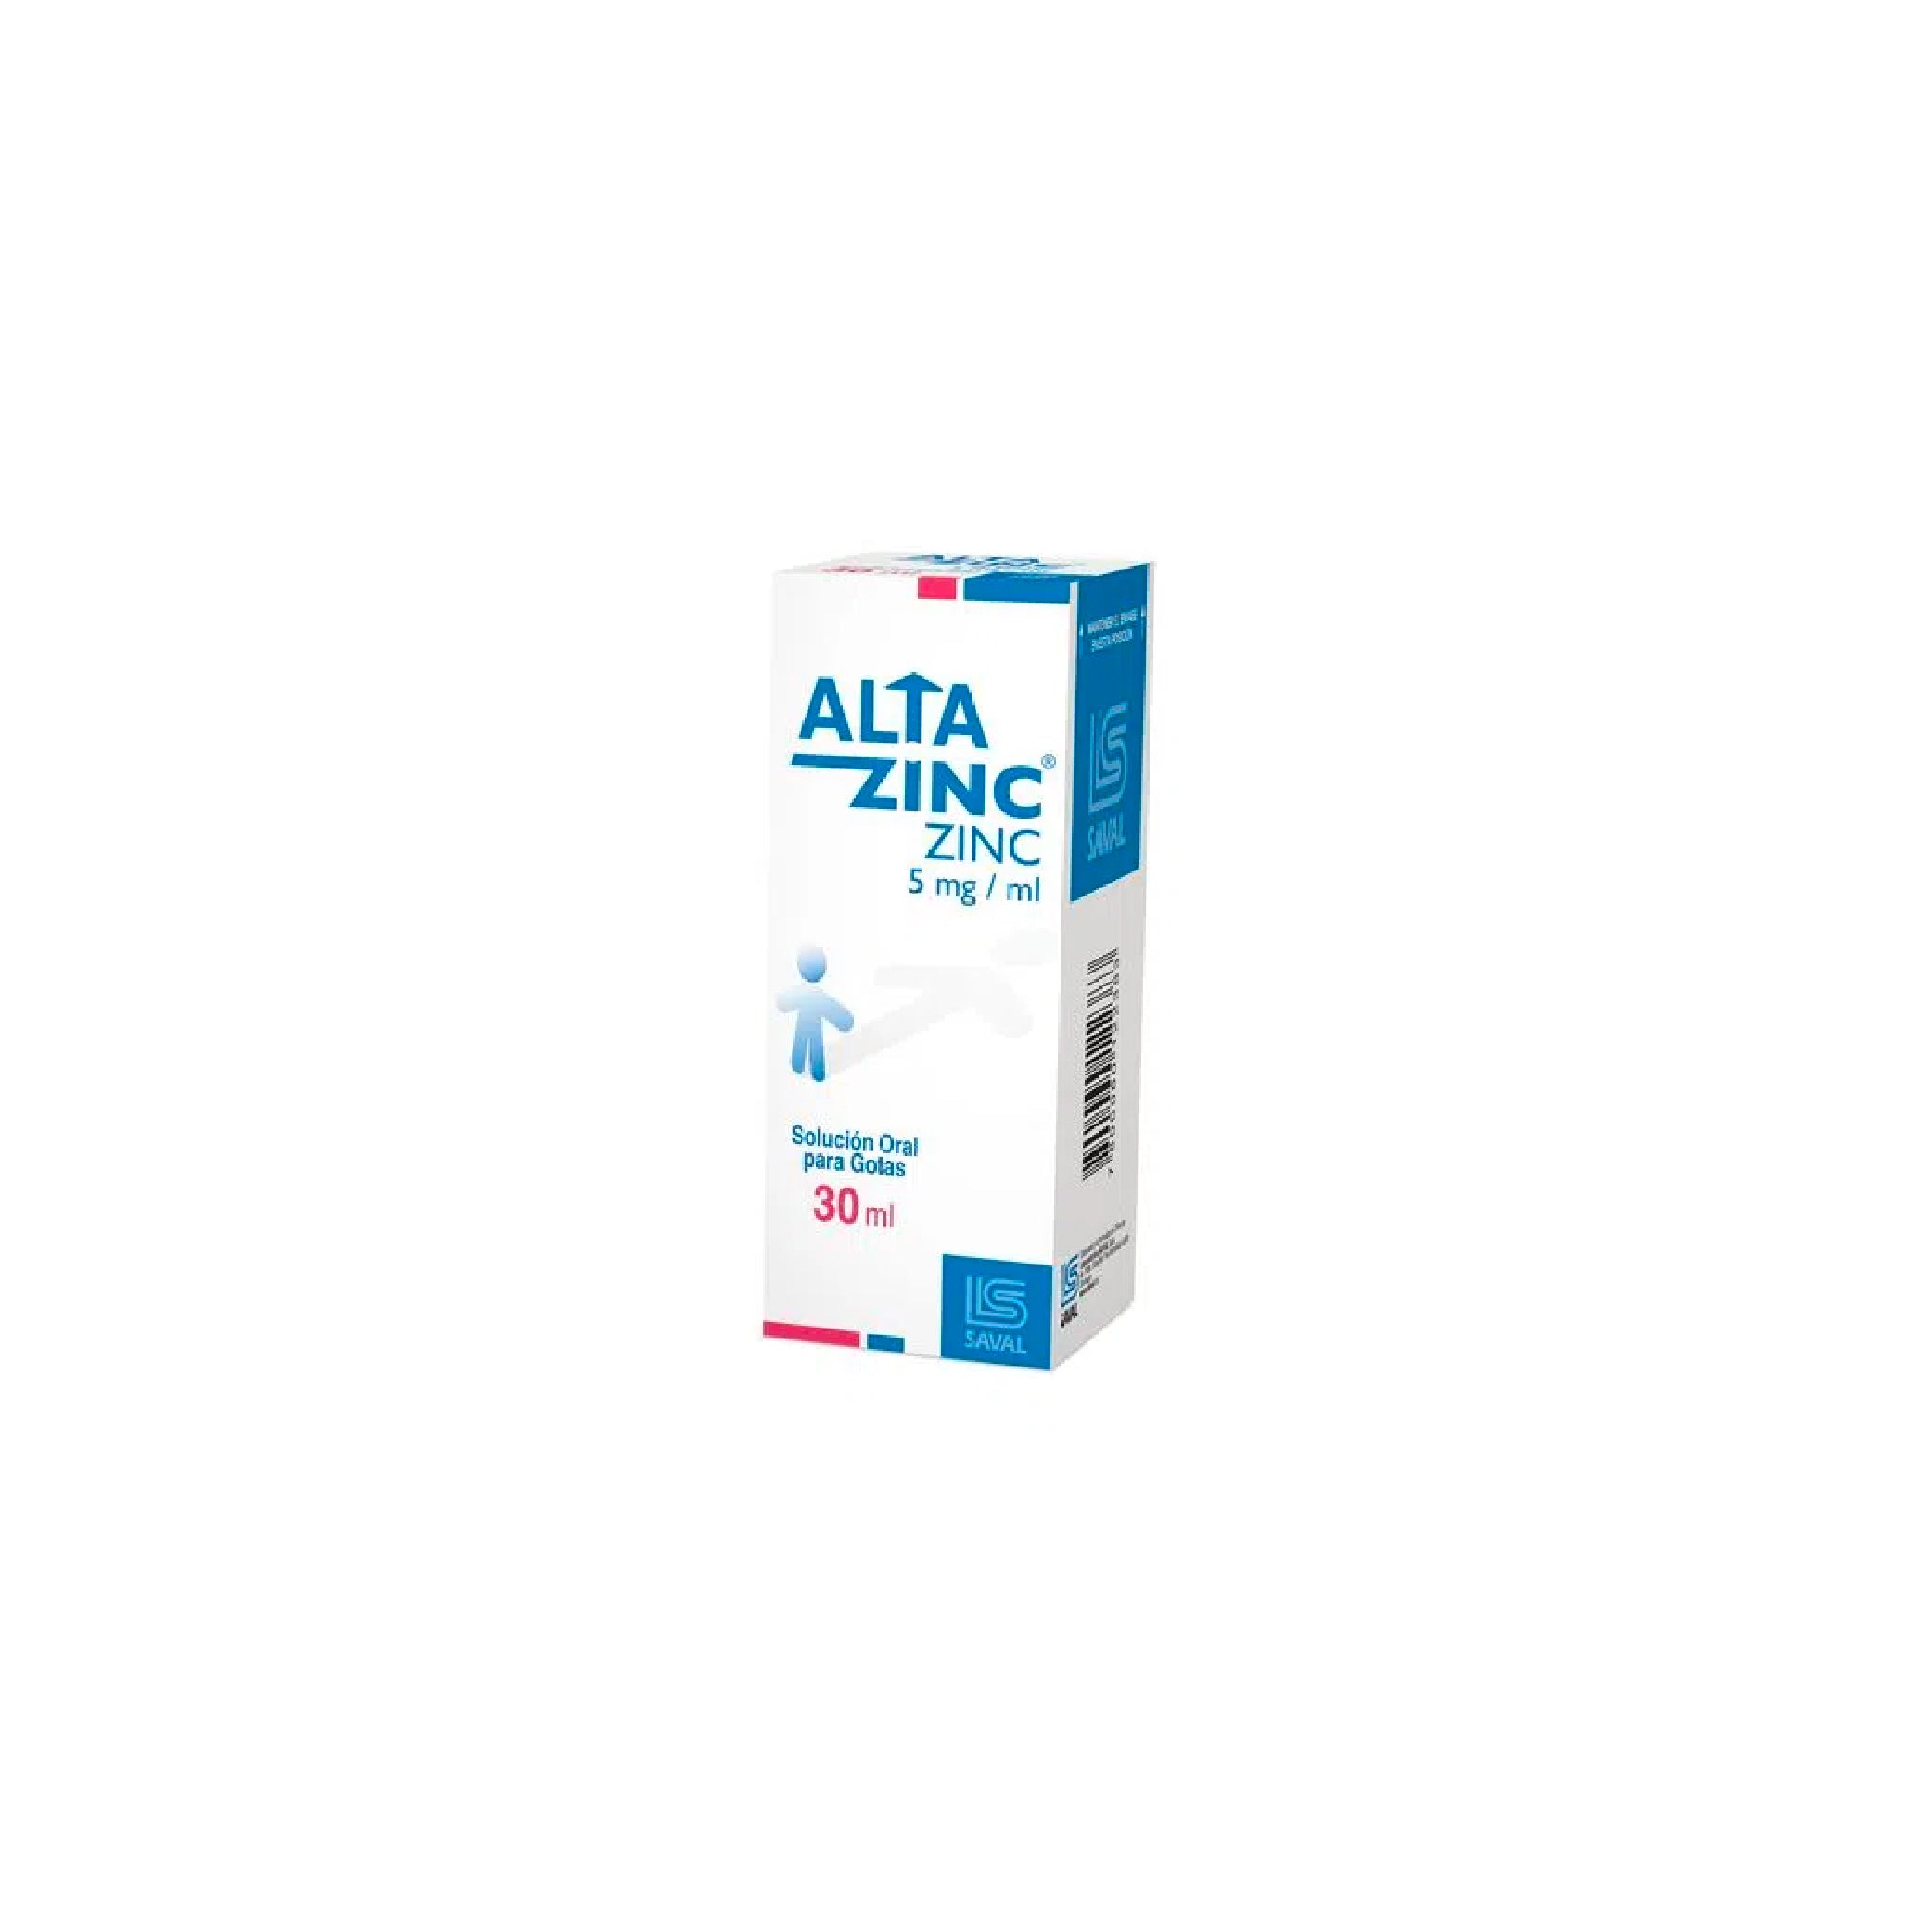 ALTAZINC 5mg /ml Oral Gotas x 30ml